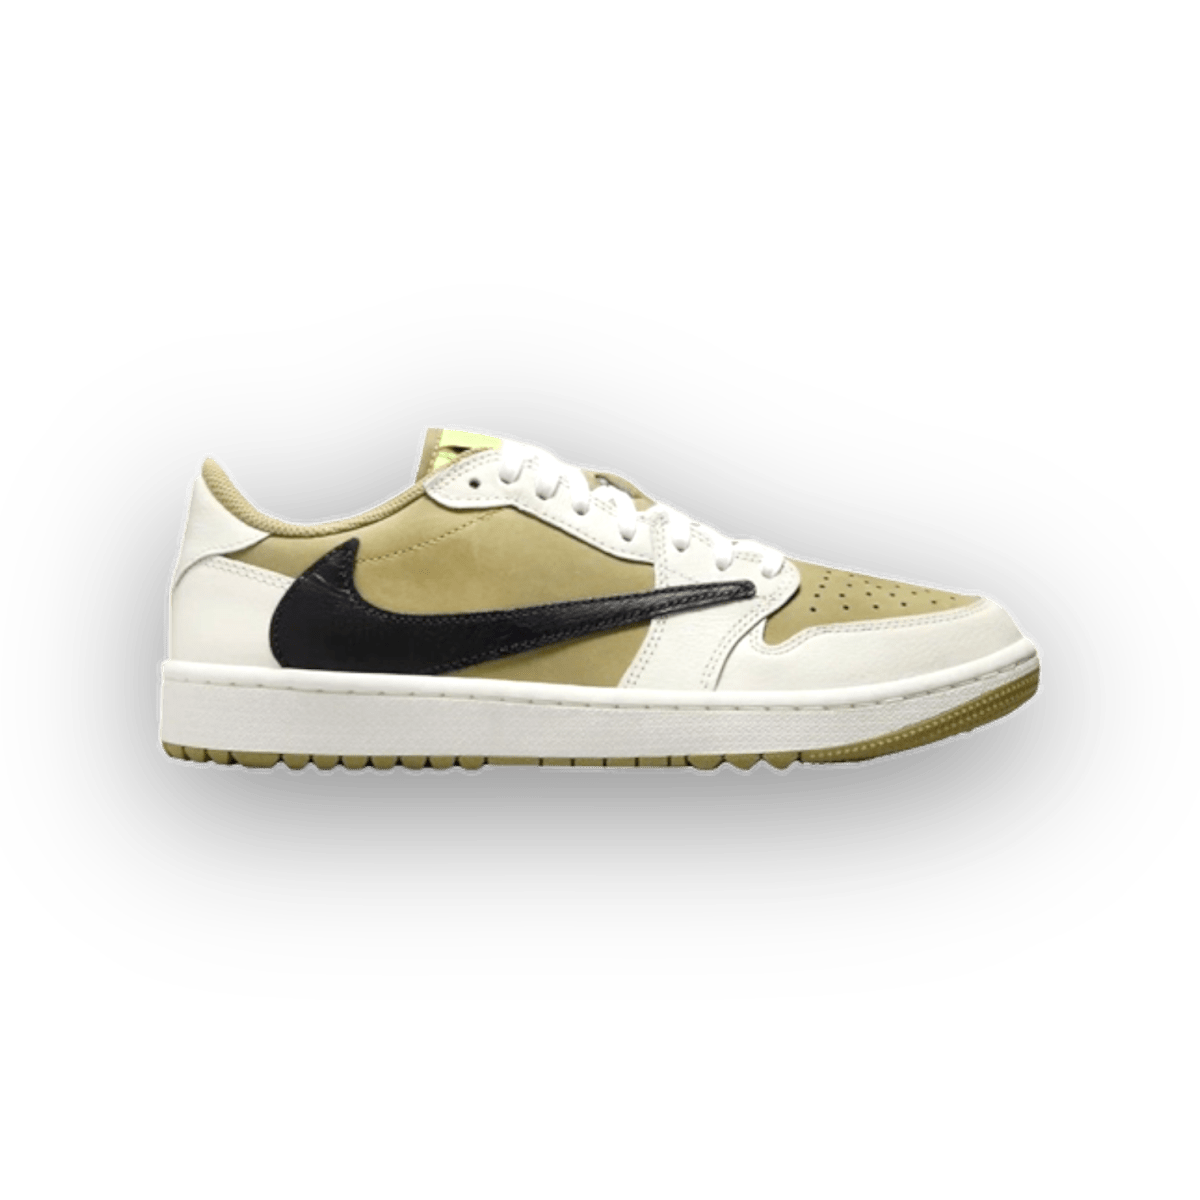 Travis Scott x Air Jordan 1 Low Golf 'Neutral Olive' - Low Sneaker - Jawns on Fire Sneakers & Streetwear